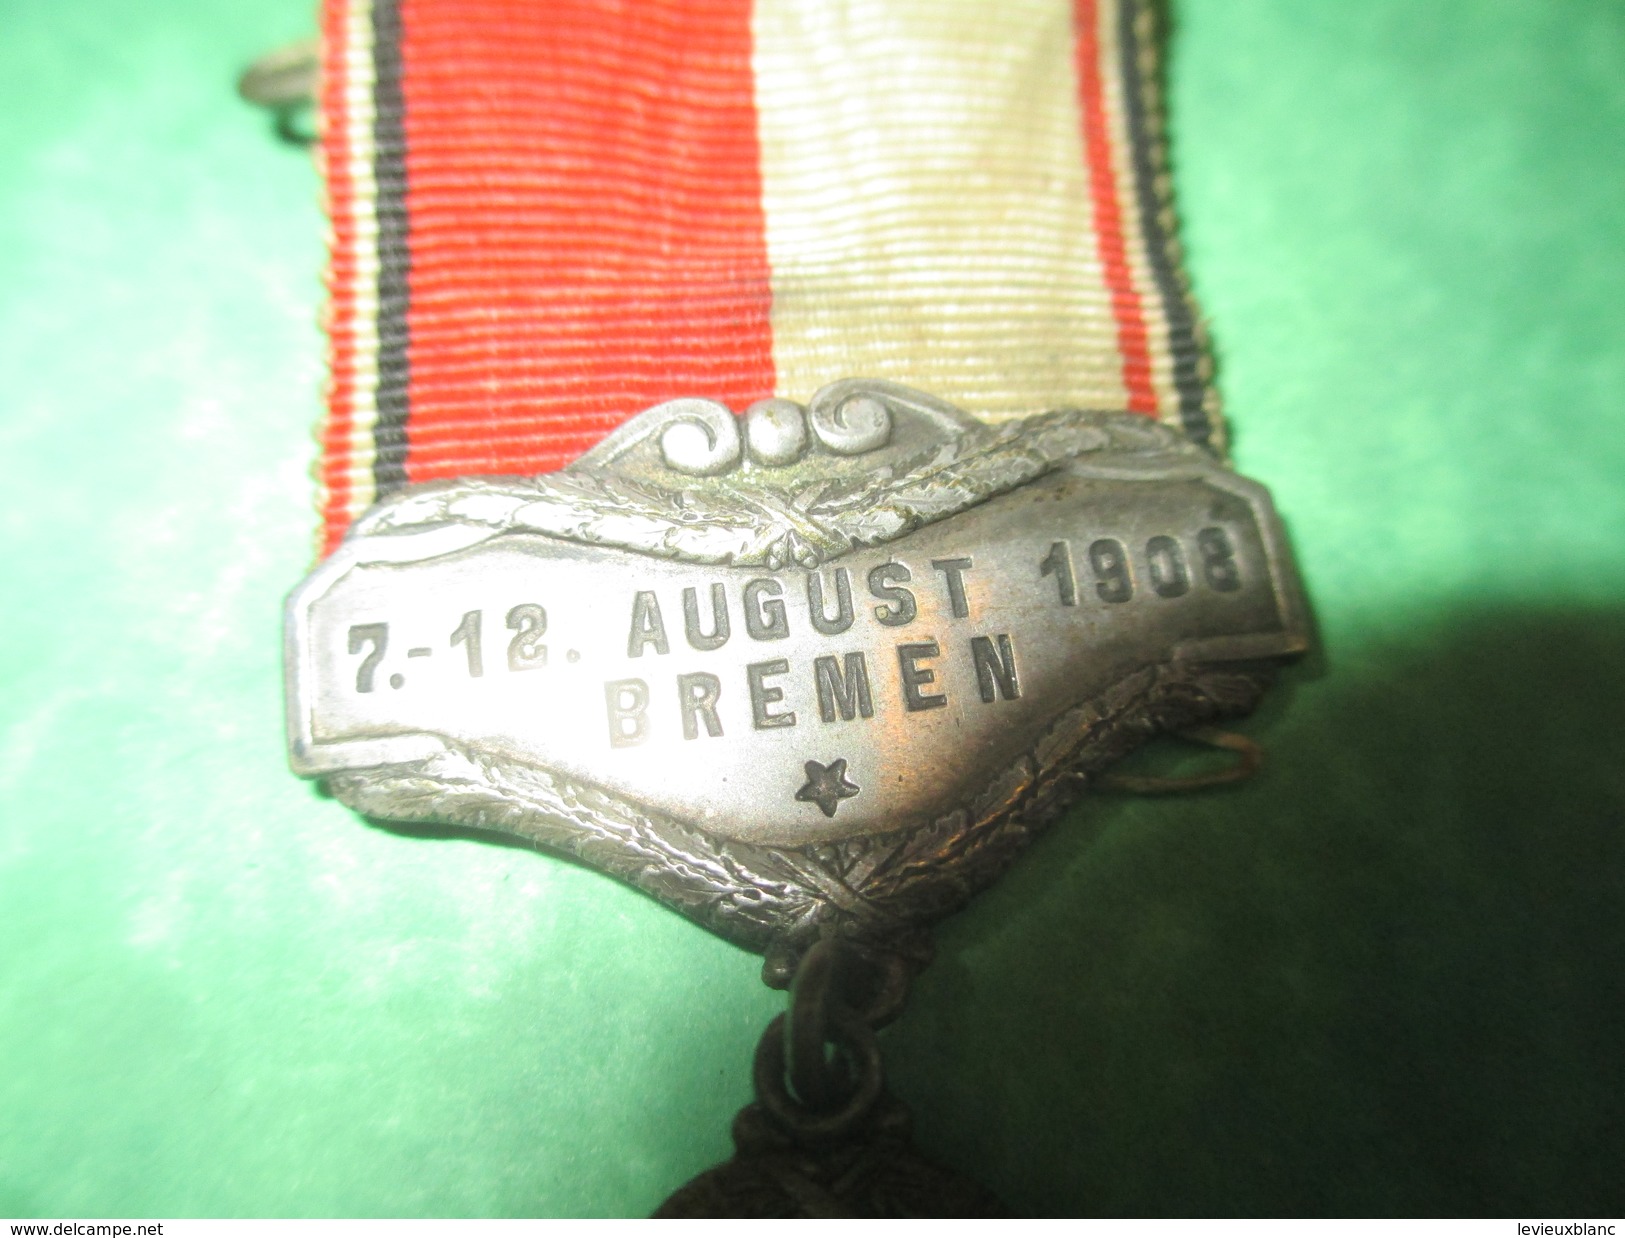 Médaille Pendante à épingle/Sports/Fédération Cycliste Allemande/ BREME//1908          SPO160 - Cyclisme